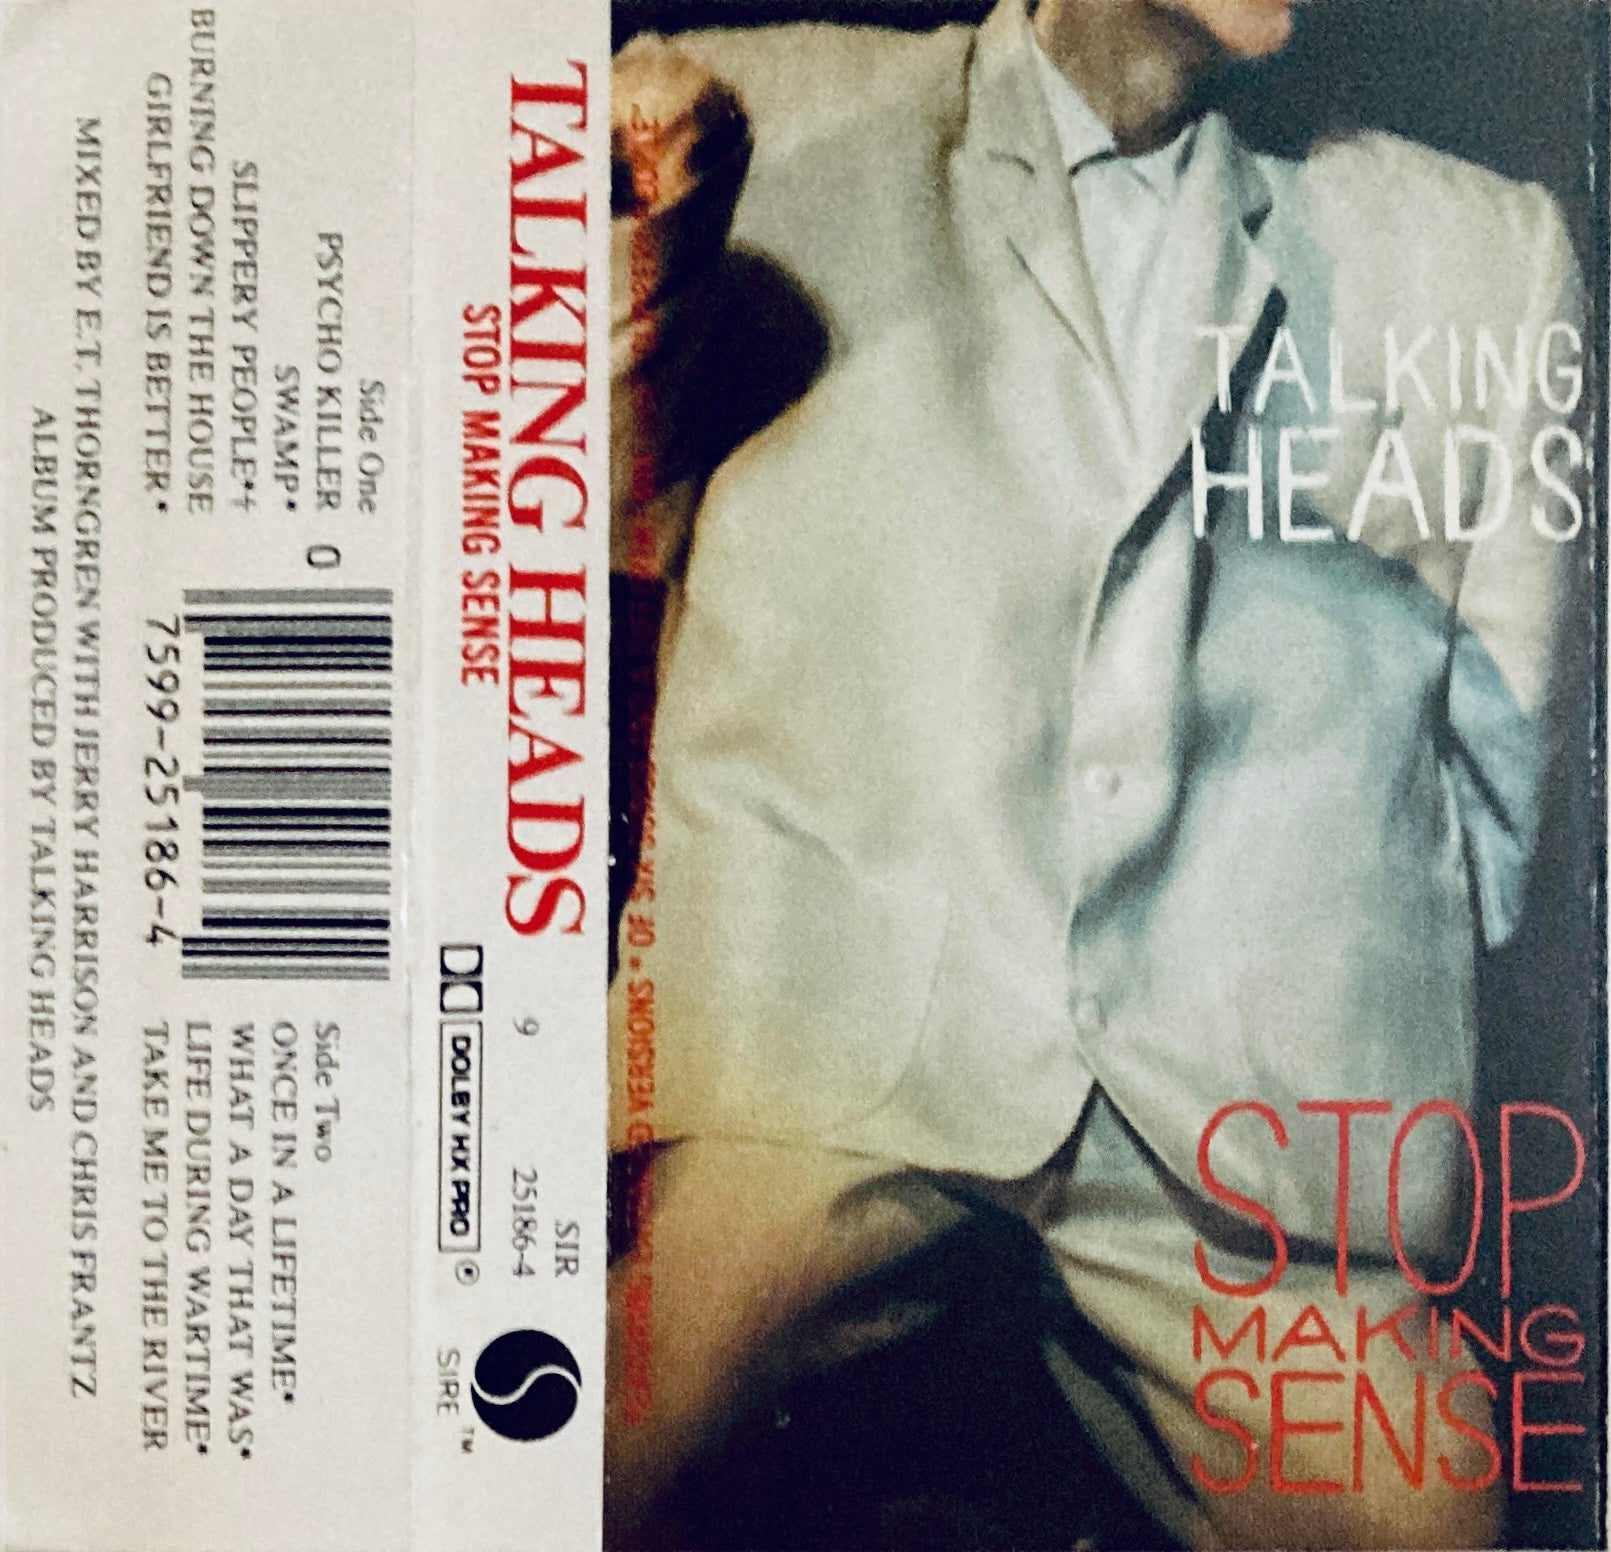 Talking Heads "Stop Making Sense" CS (1984)